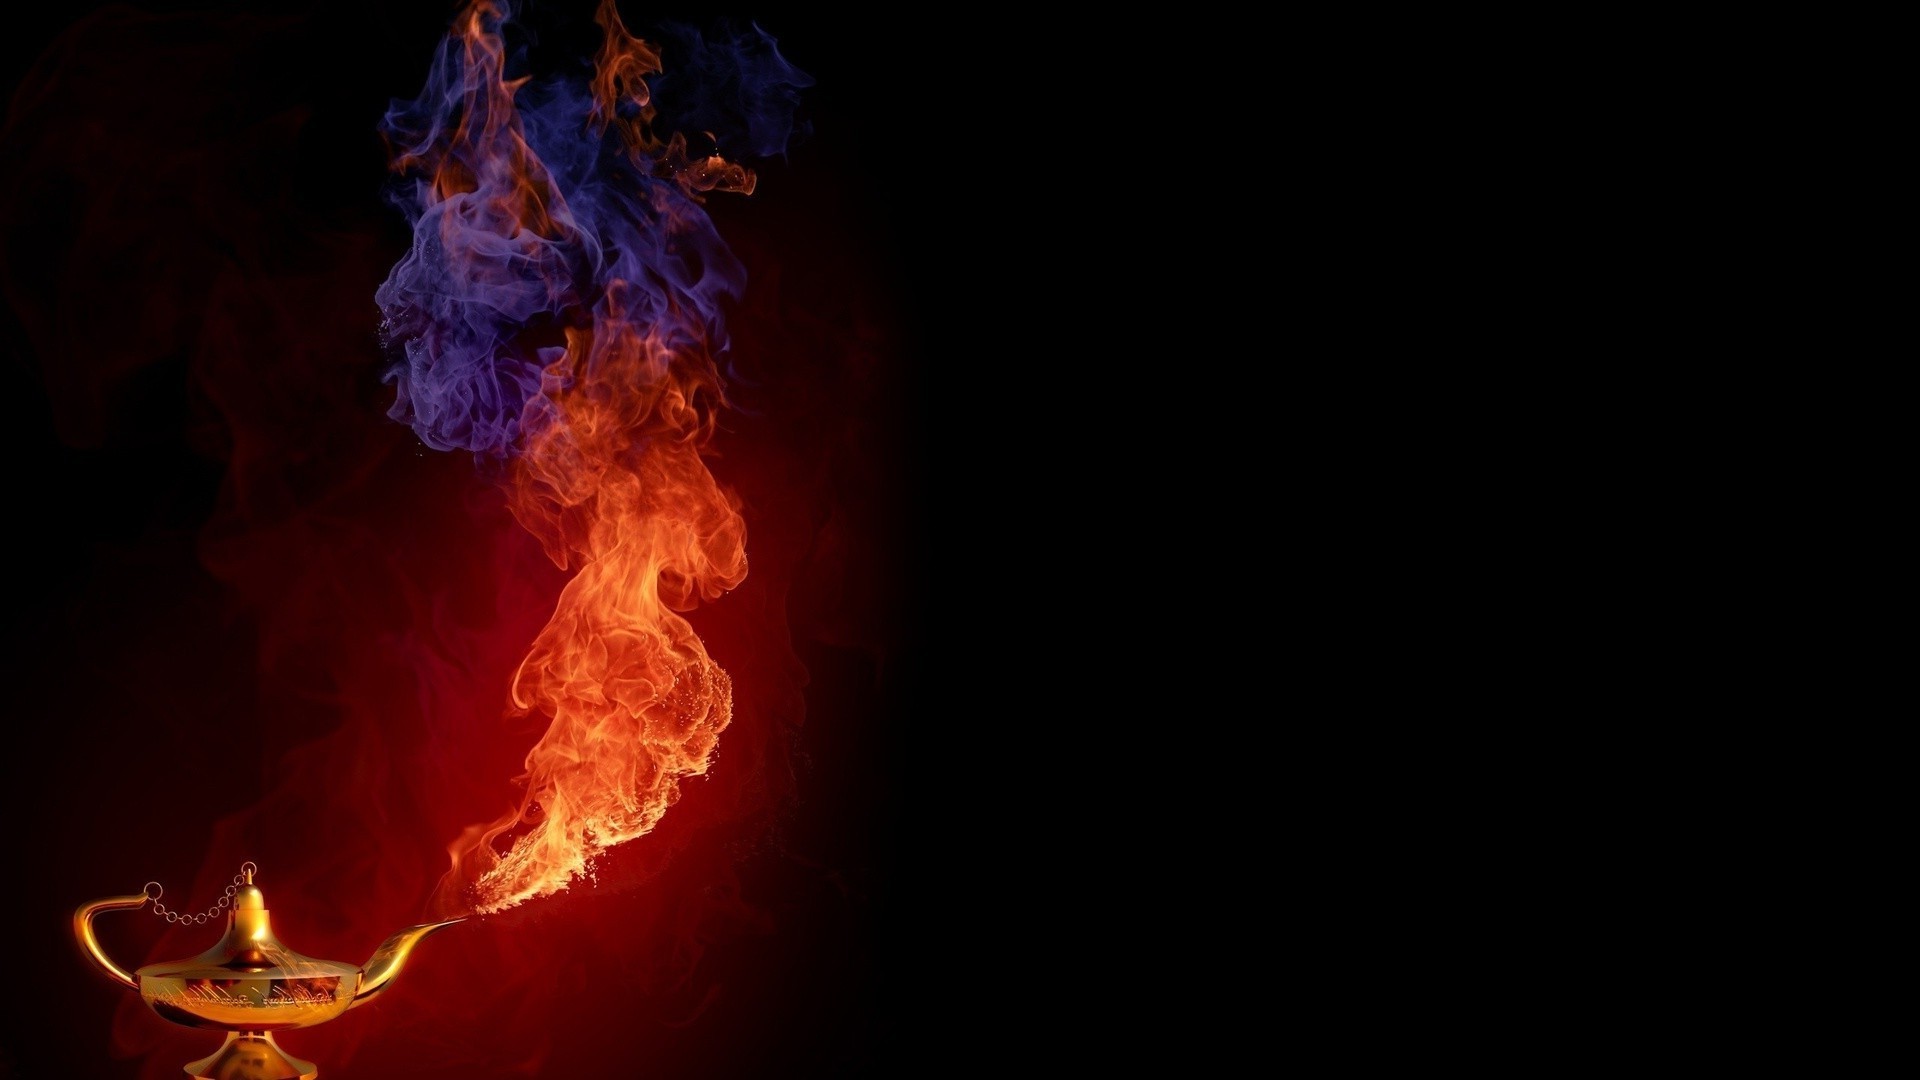 войны пламя горячая легковоспламеняющиеся сжечь дым тепло блейз костер сожгли опасность пожар ясень темный инферно энергии тепло аннотация